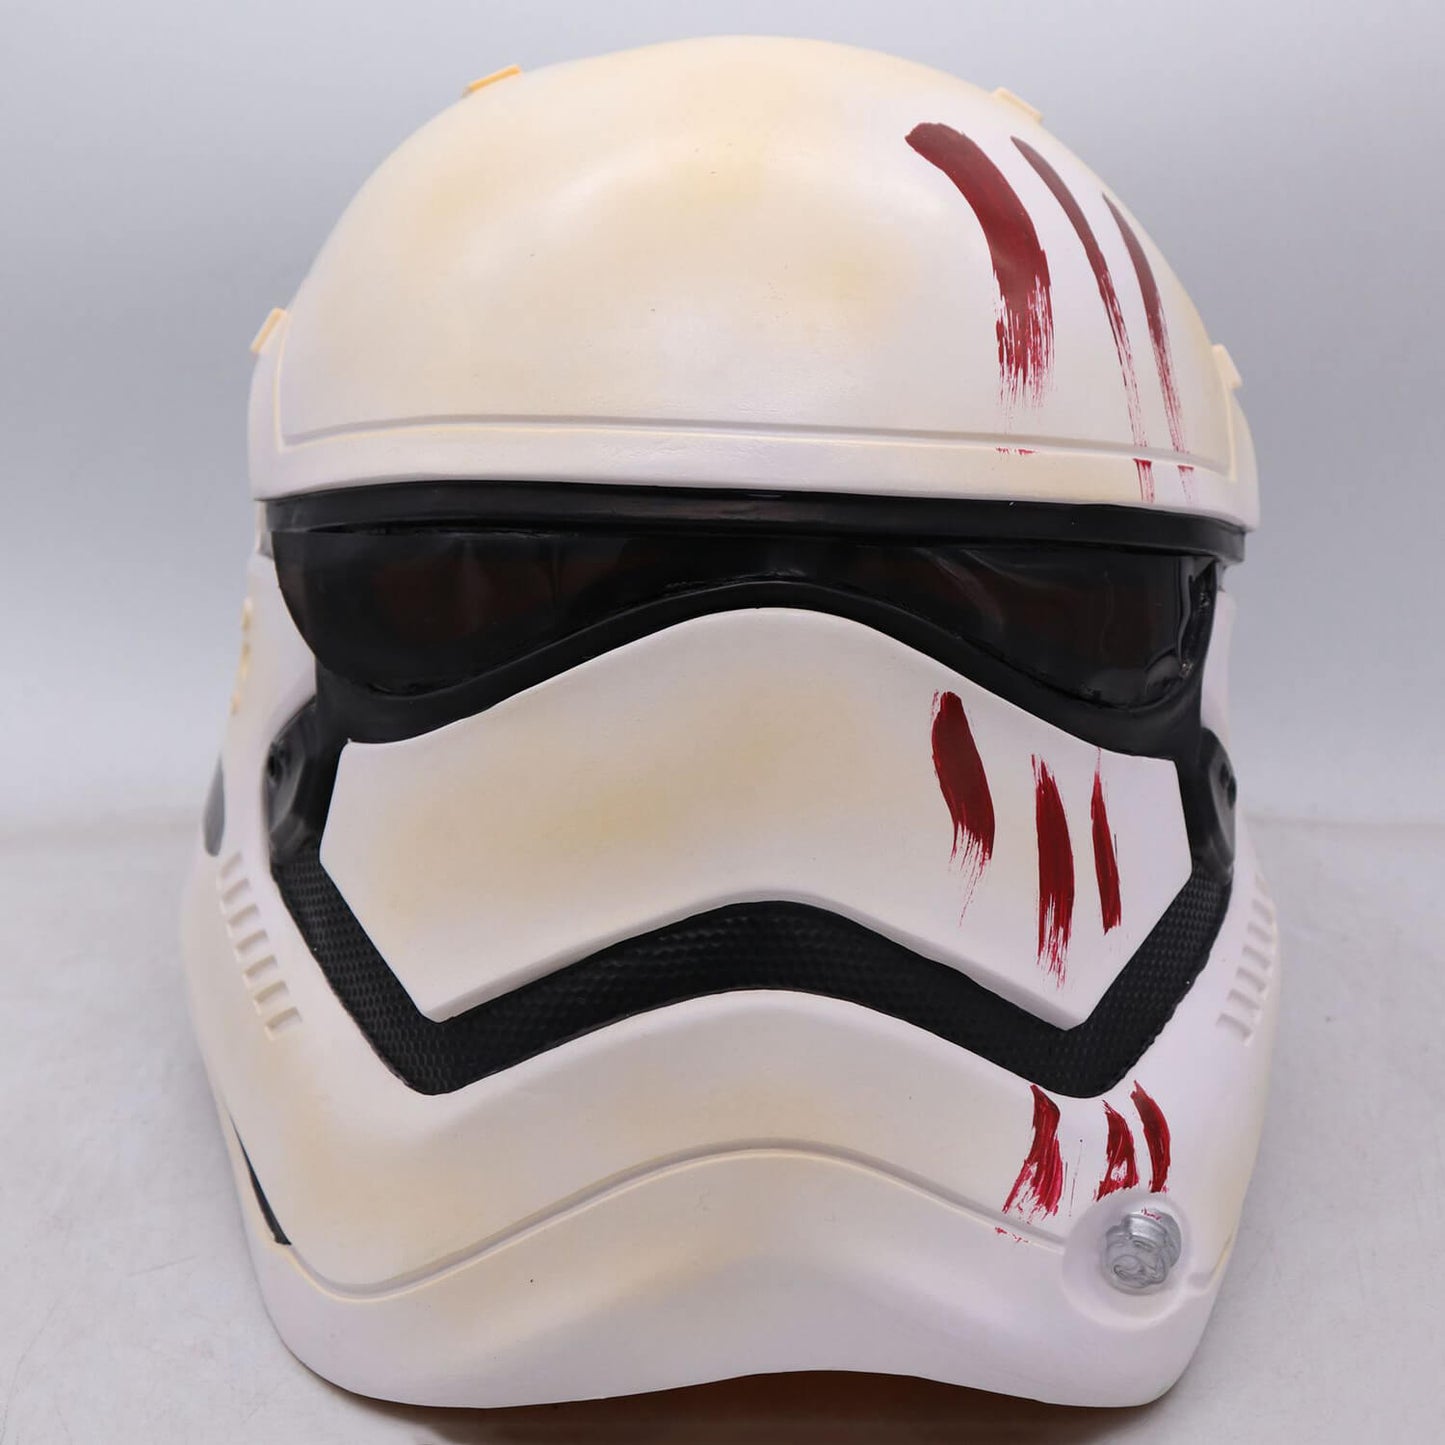 First Order Storm Trooper Helmet and Imperial Stormtrooper Helmet